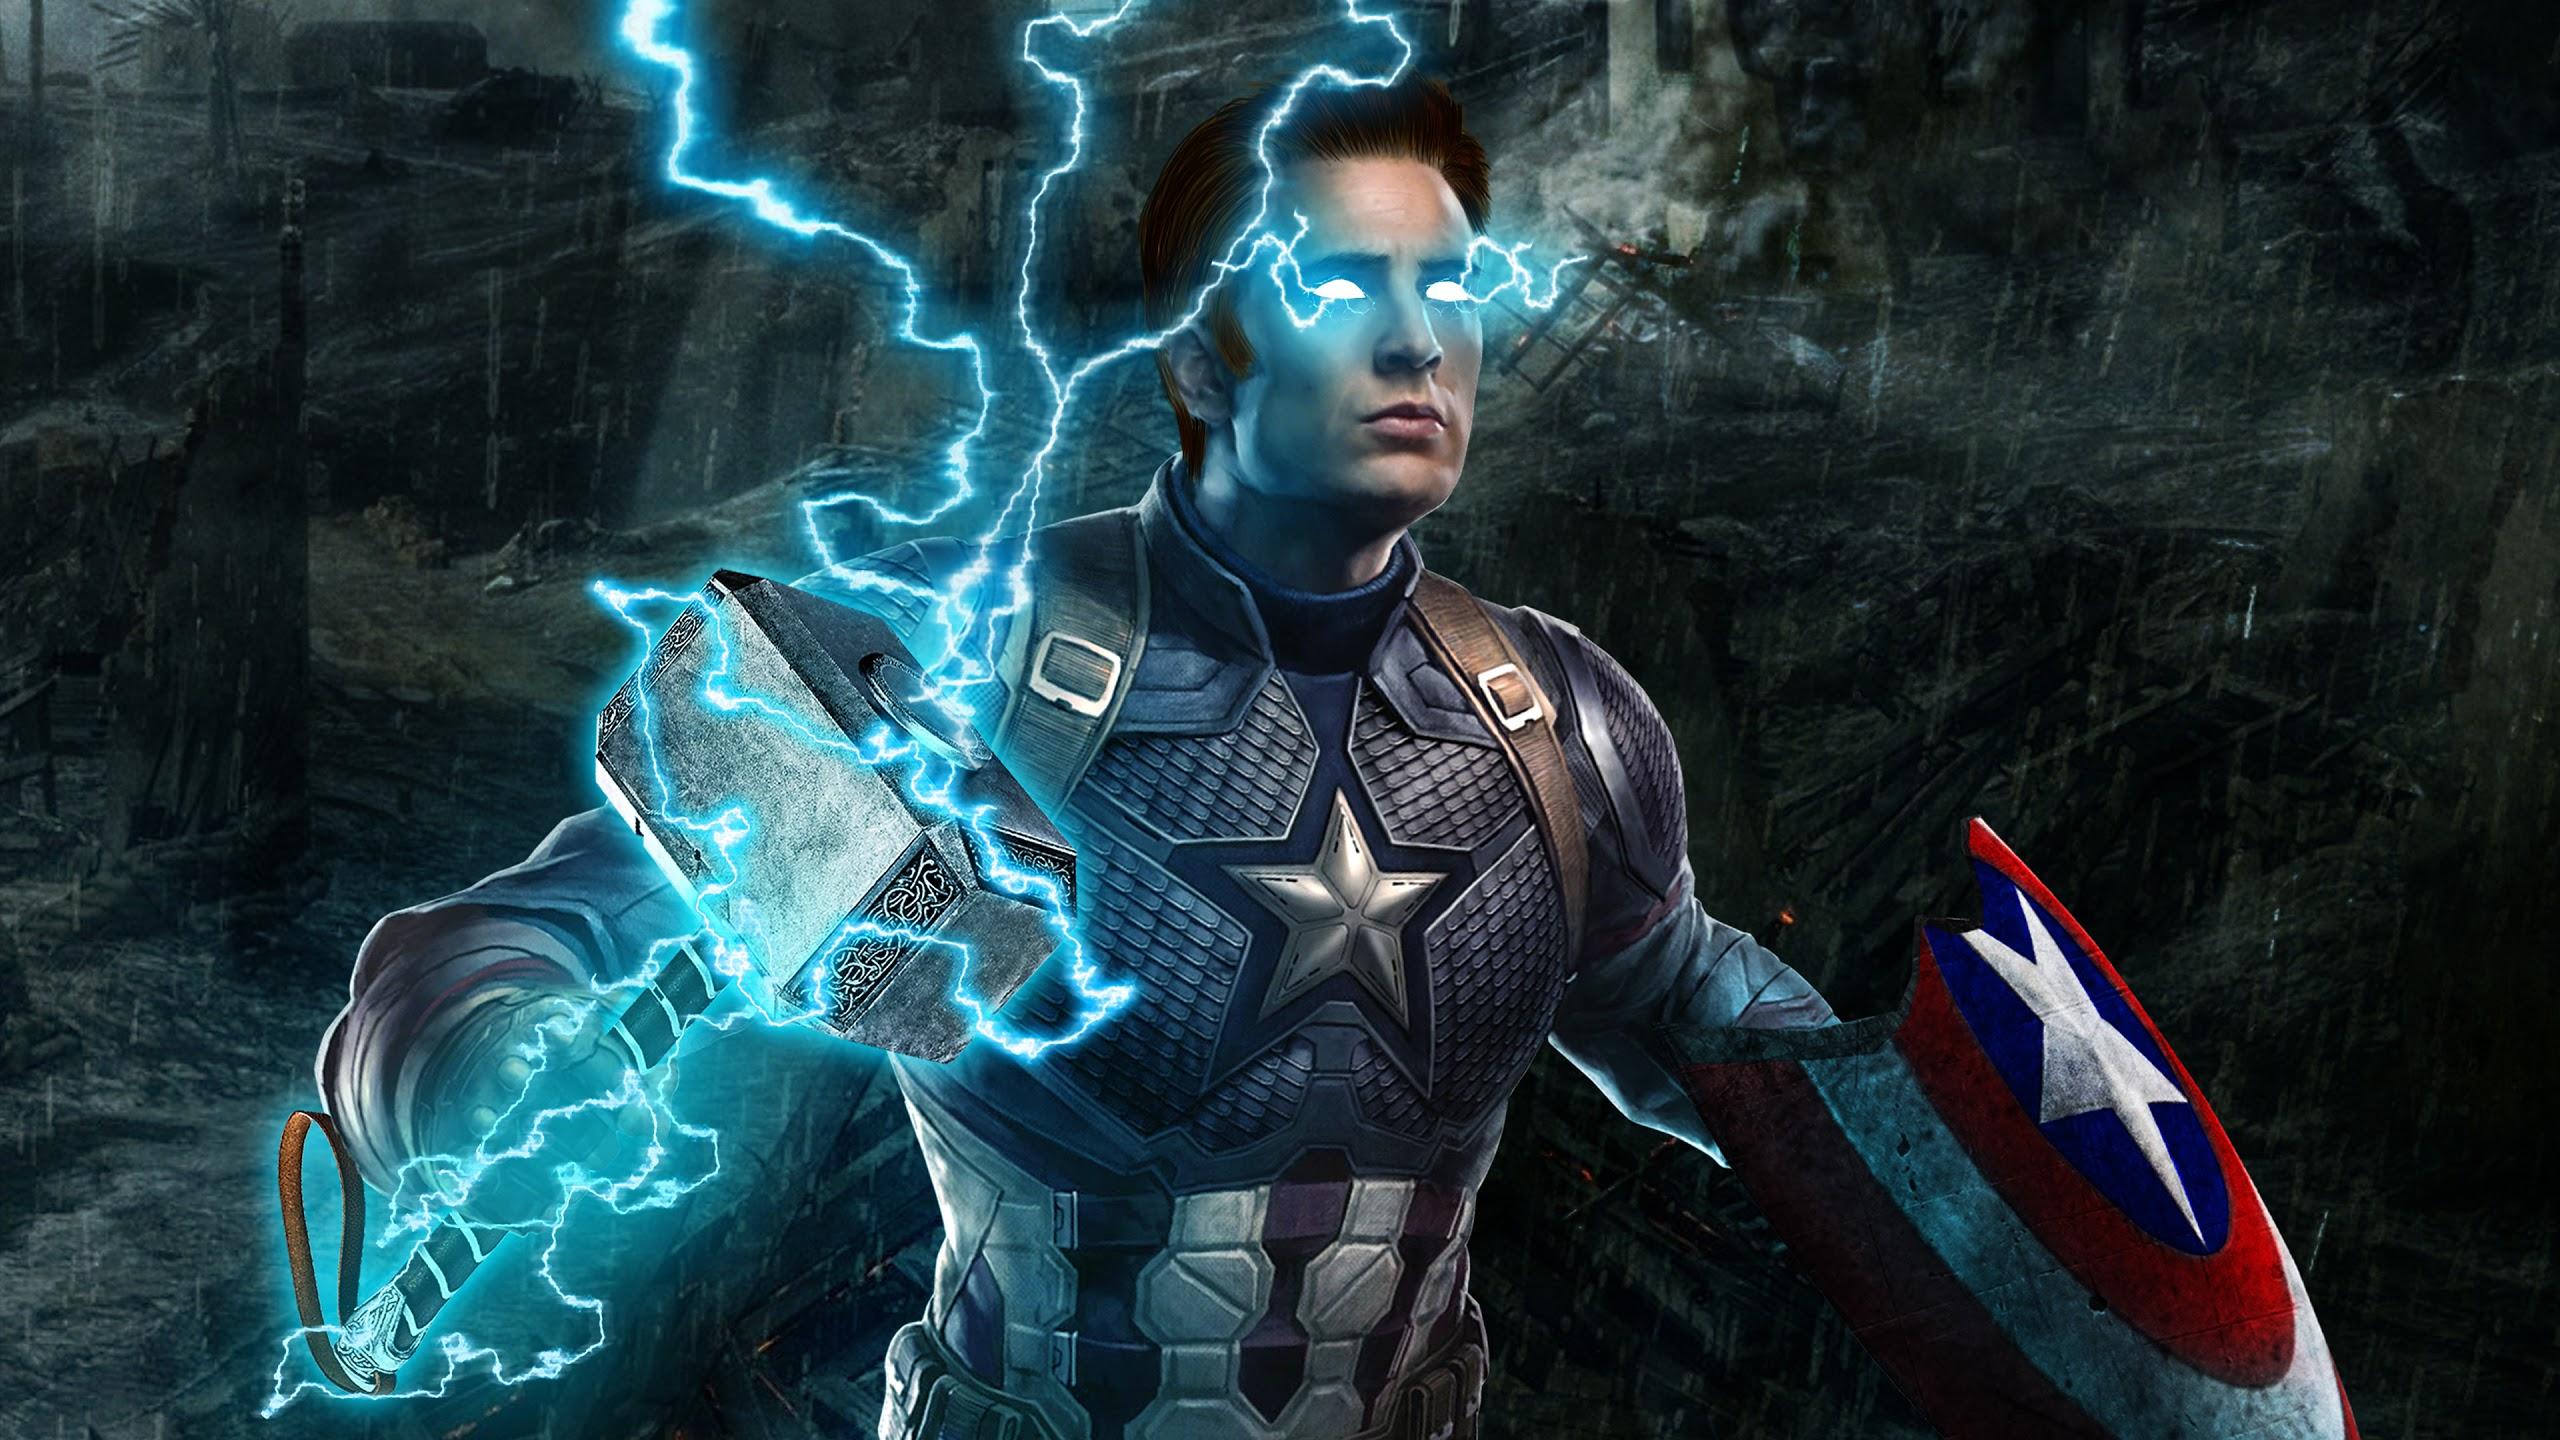 Avengers: Endgame Captain America Thor Hammer Lightning 4K Wallpaper